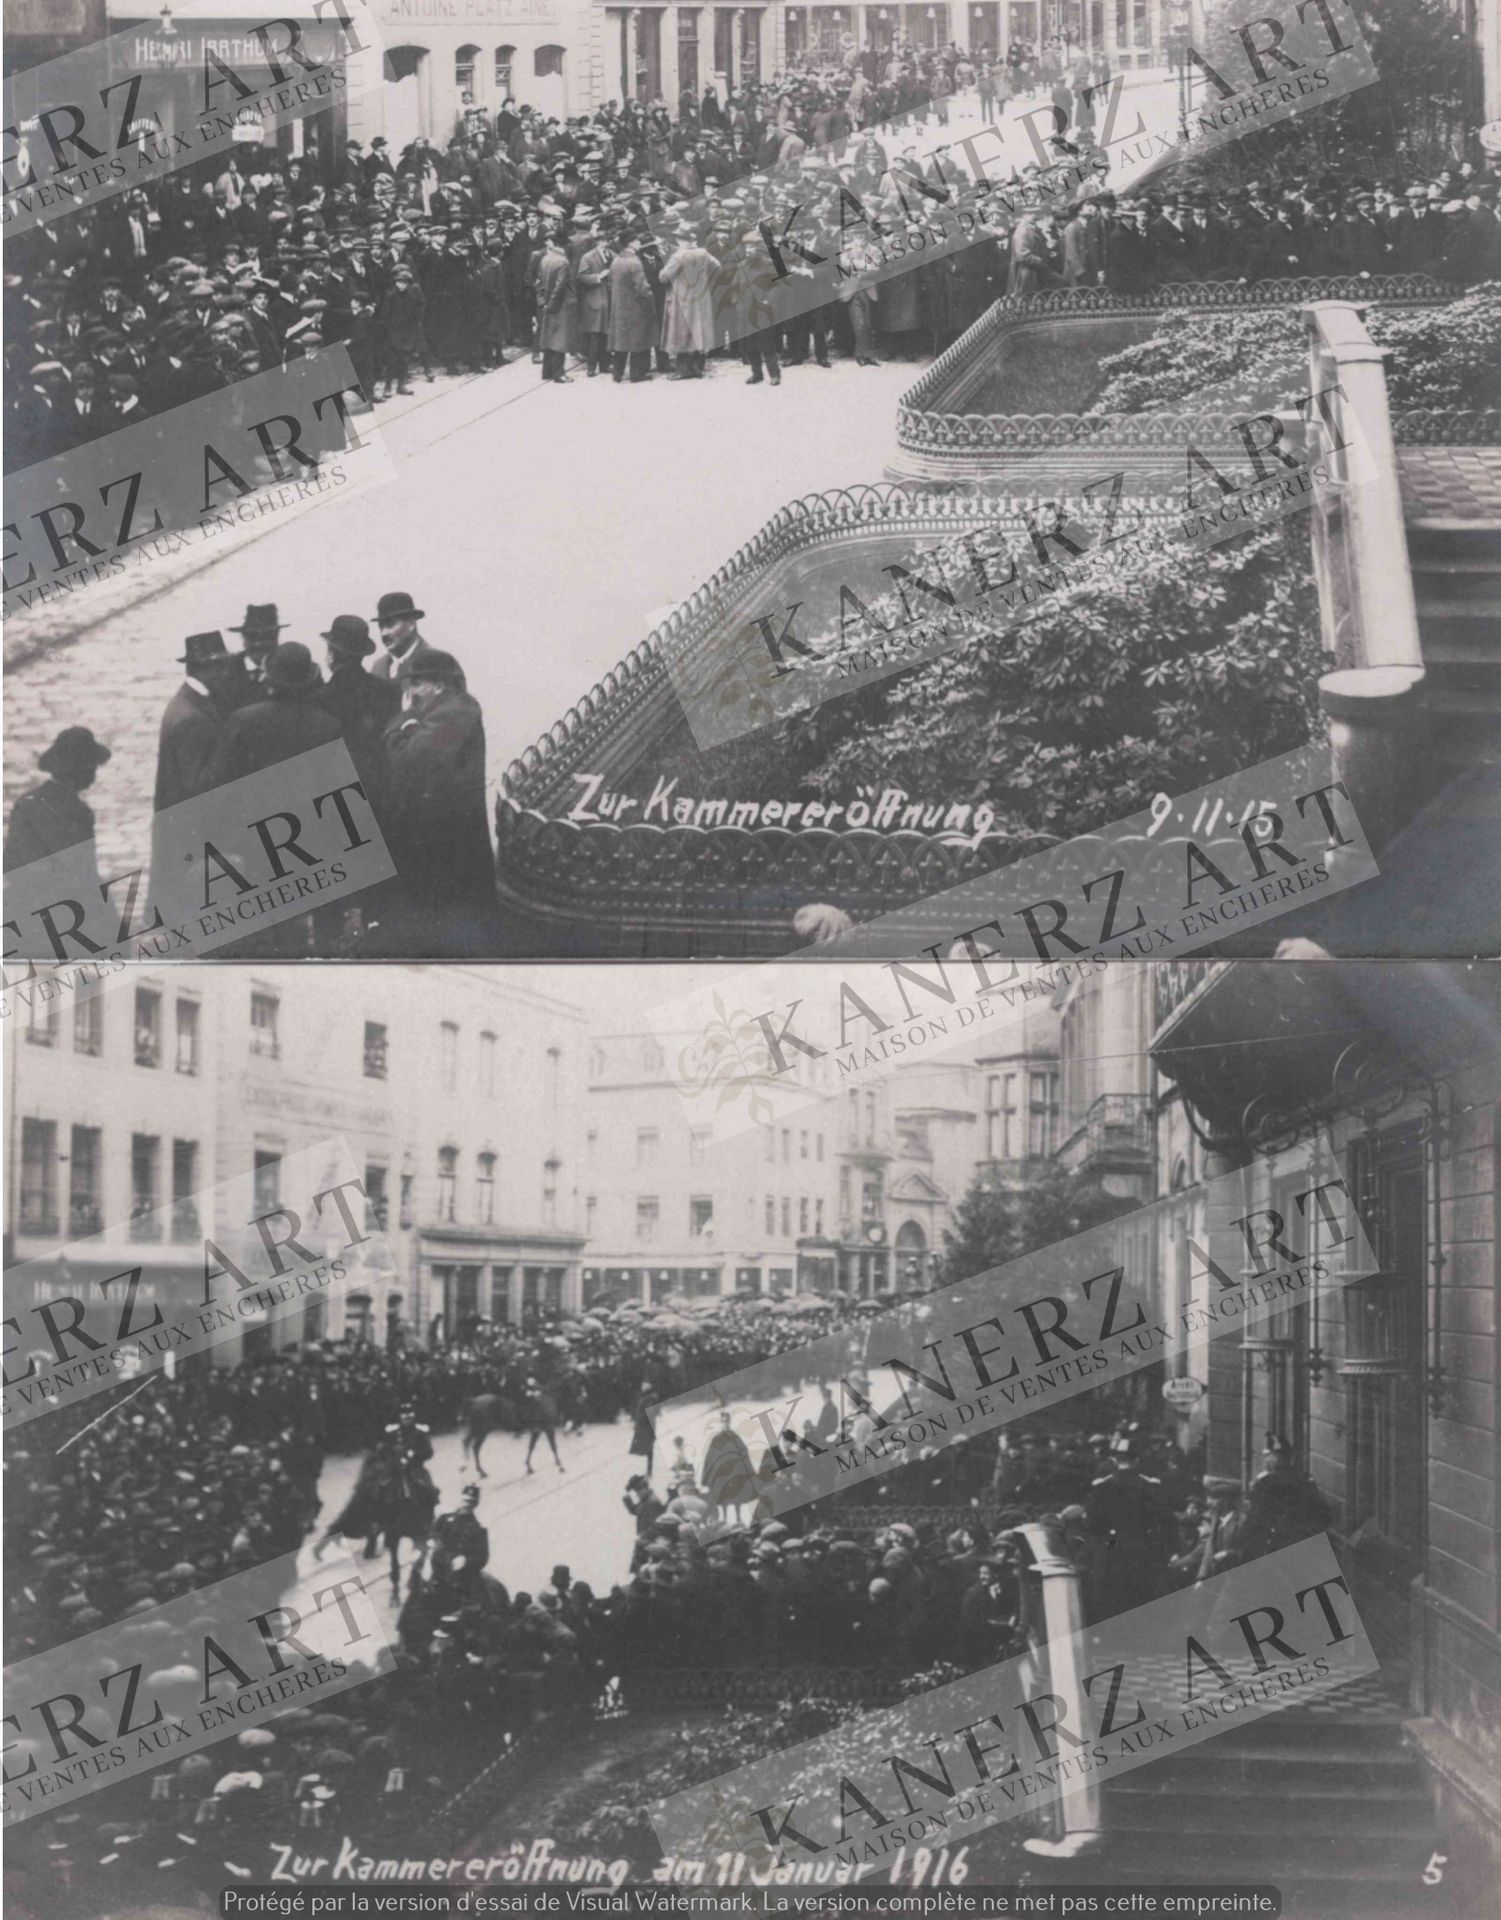 Null (WAR I) "Zur Kammereröffnung 9.11.15 "示威的照片卡+"Zur Kammereröffnung am 11 Jan&hellip;